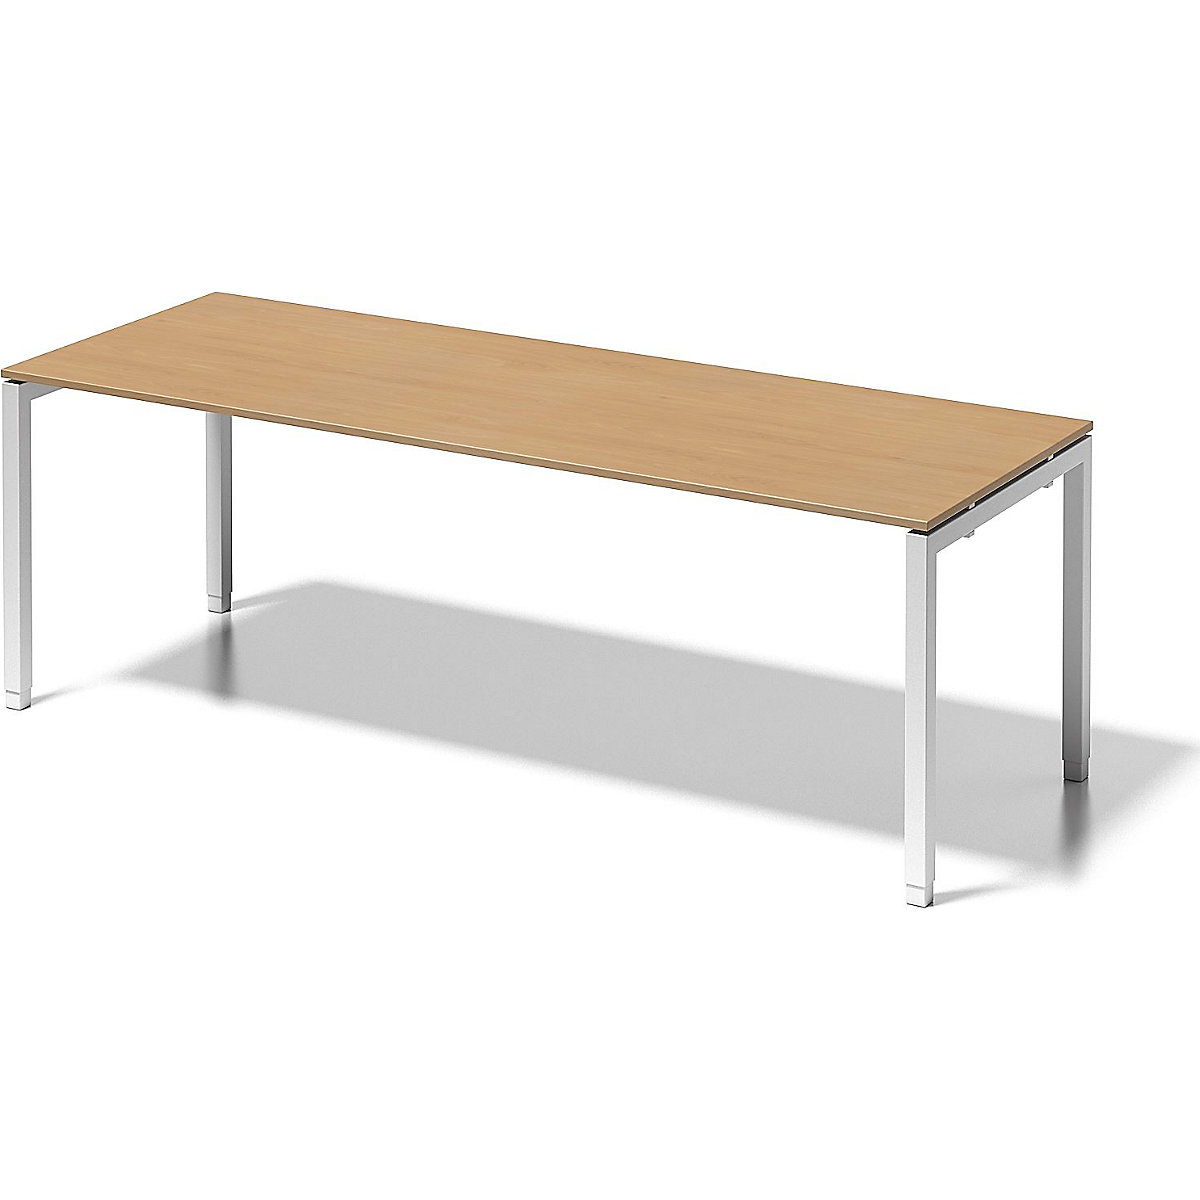 Pisaći stol CITO, postolje u obliku slova U – BISLEY, VxŠxD 650 – 850 x 2200 x 800 mm, postolje u bijeloj boji, ploča od bukve-5